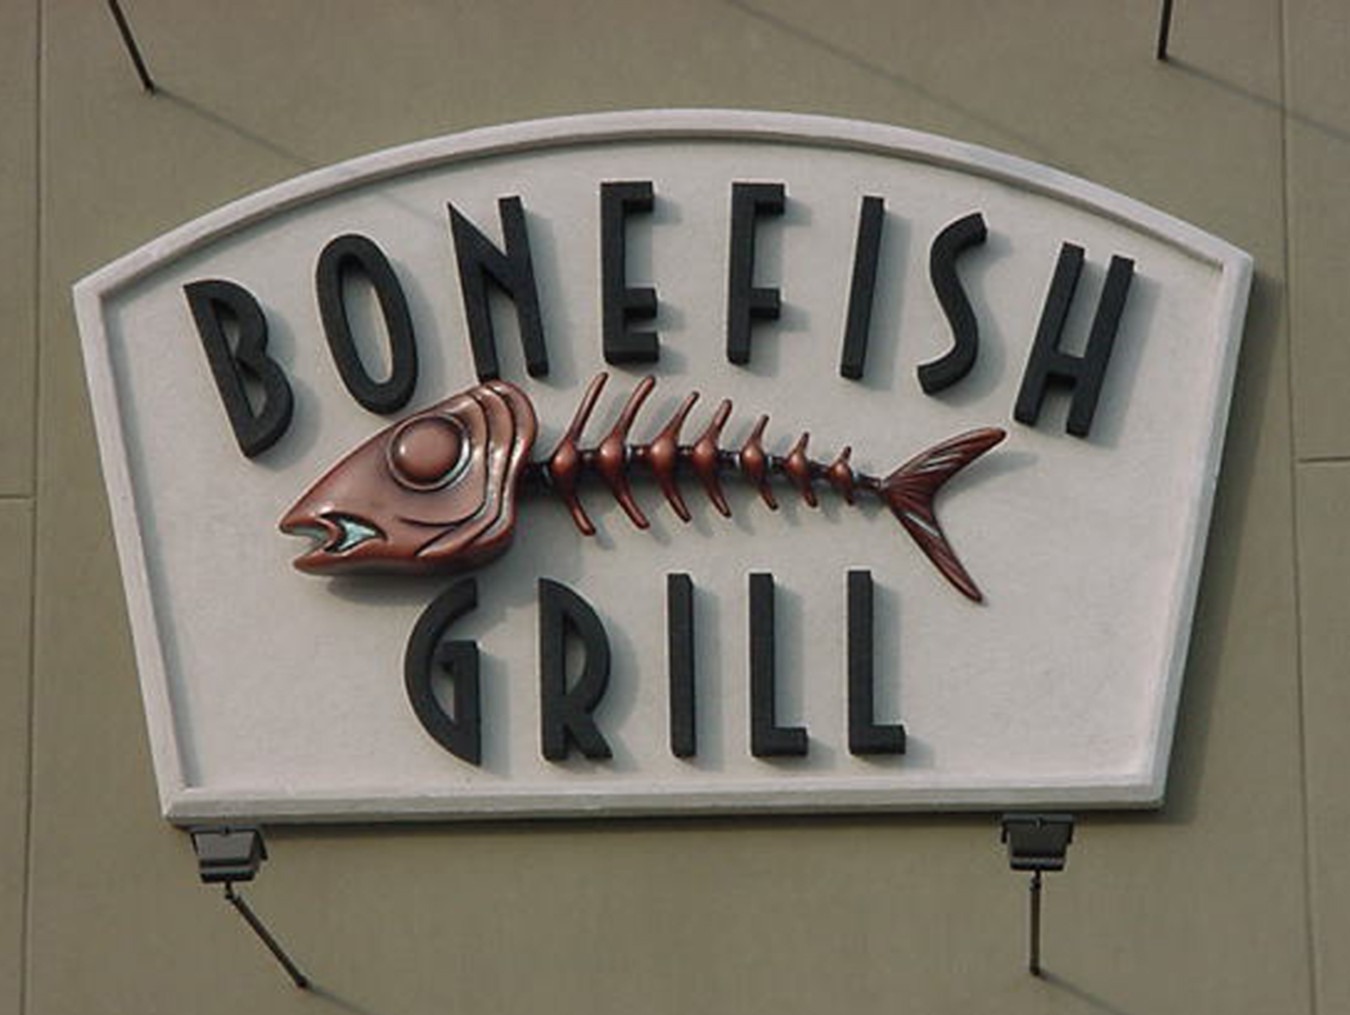 Bonefish.jpg